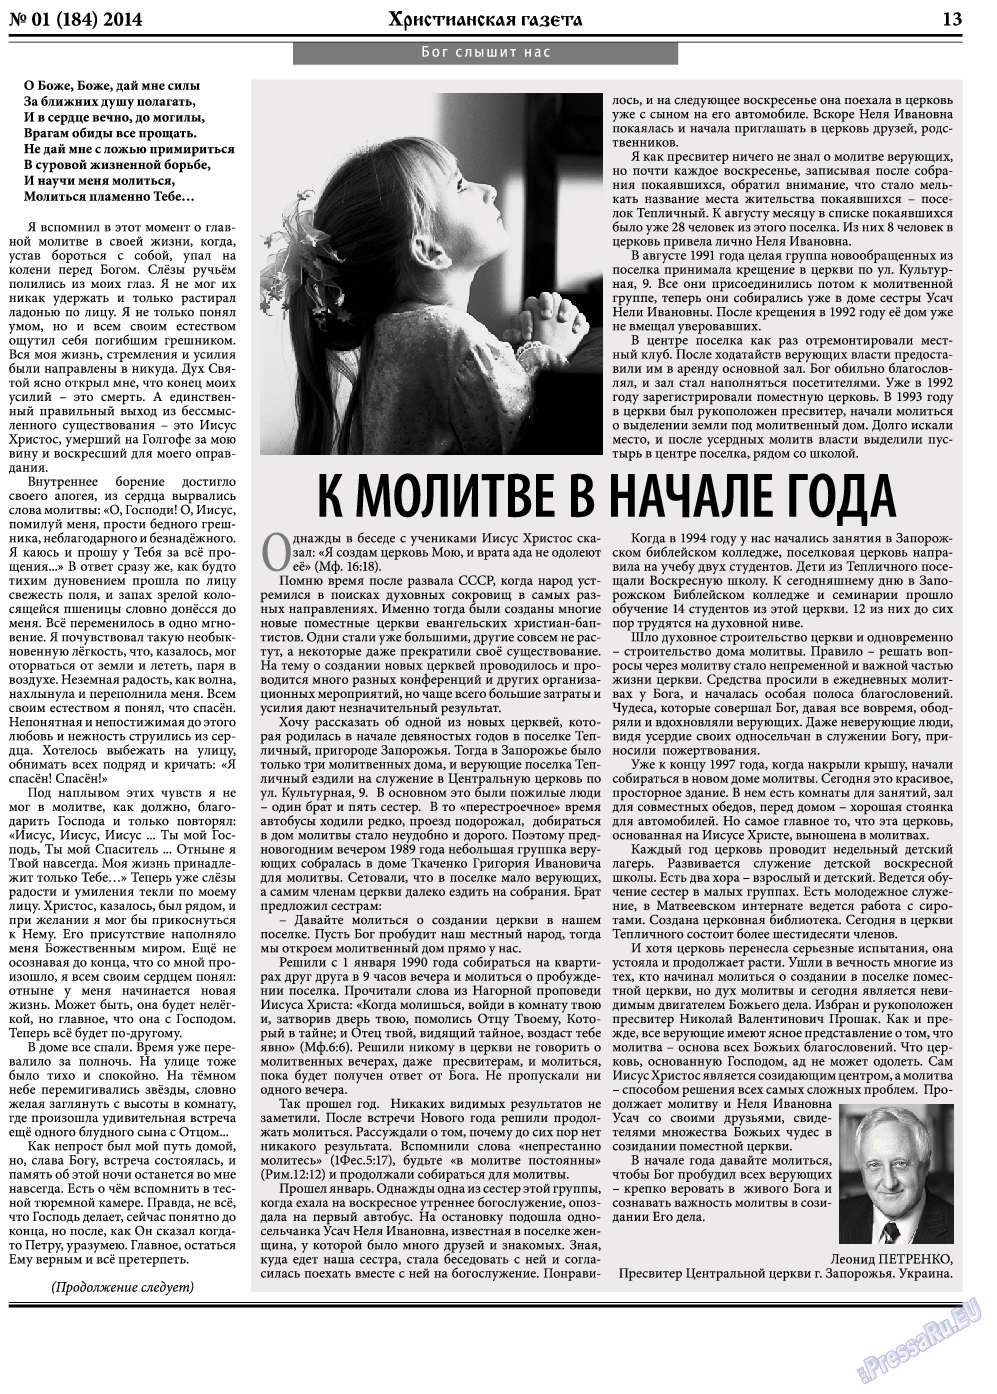 Христианская газета, газета. 2014 №1 стр.21